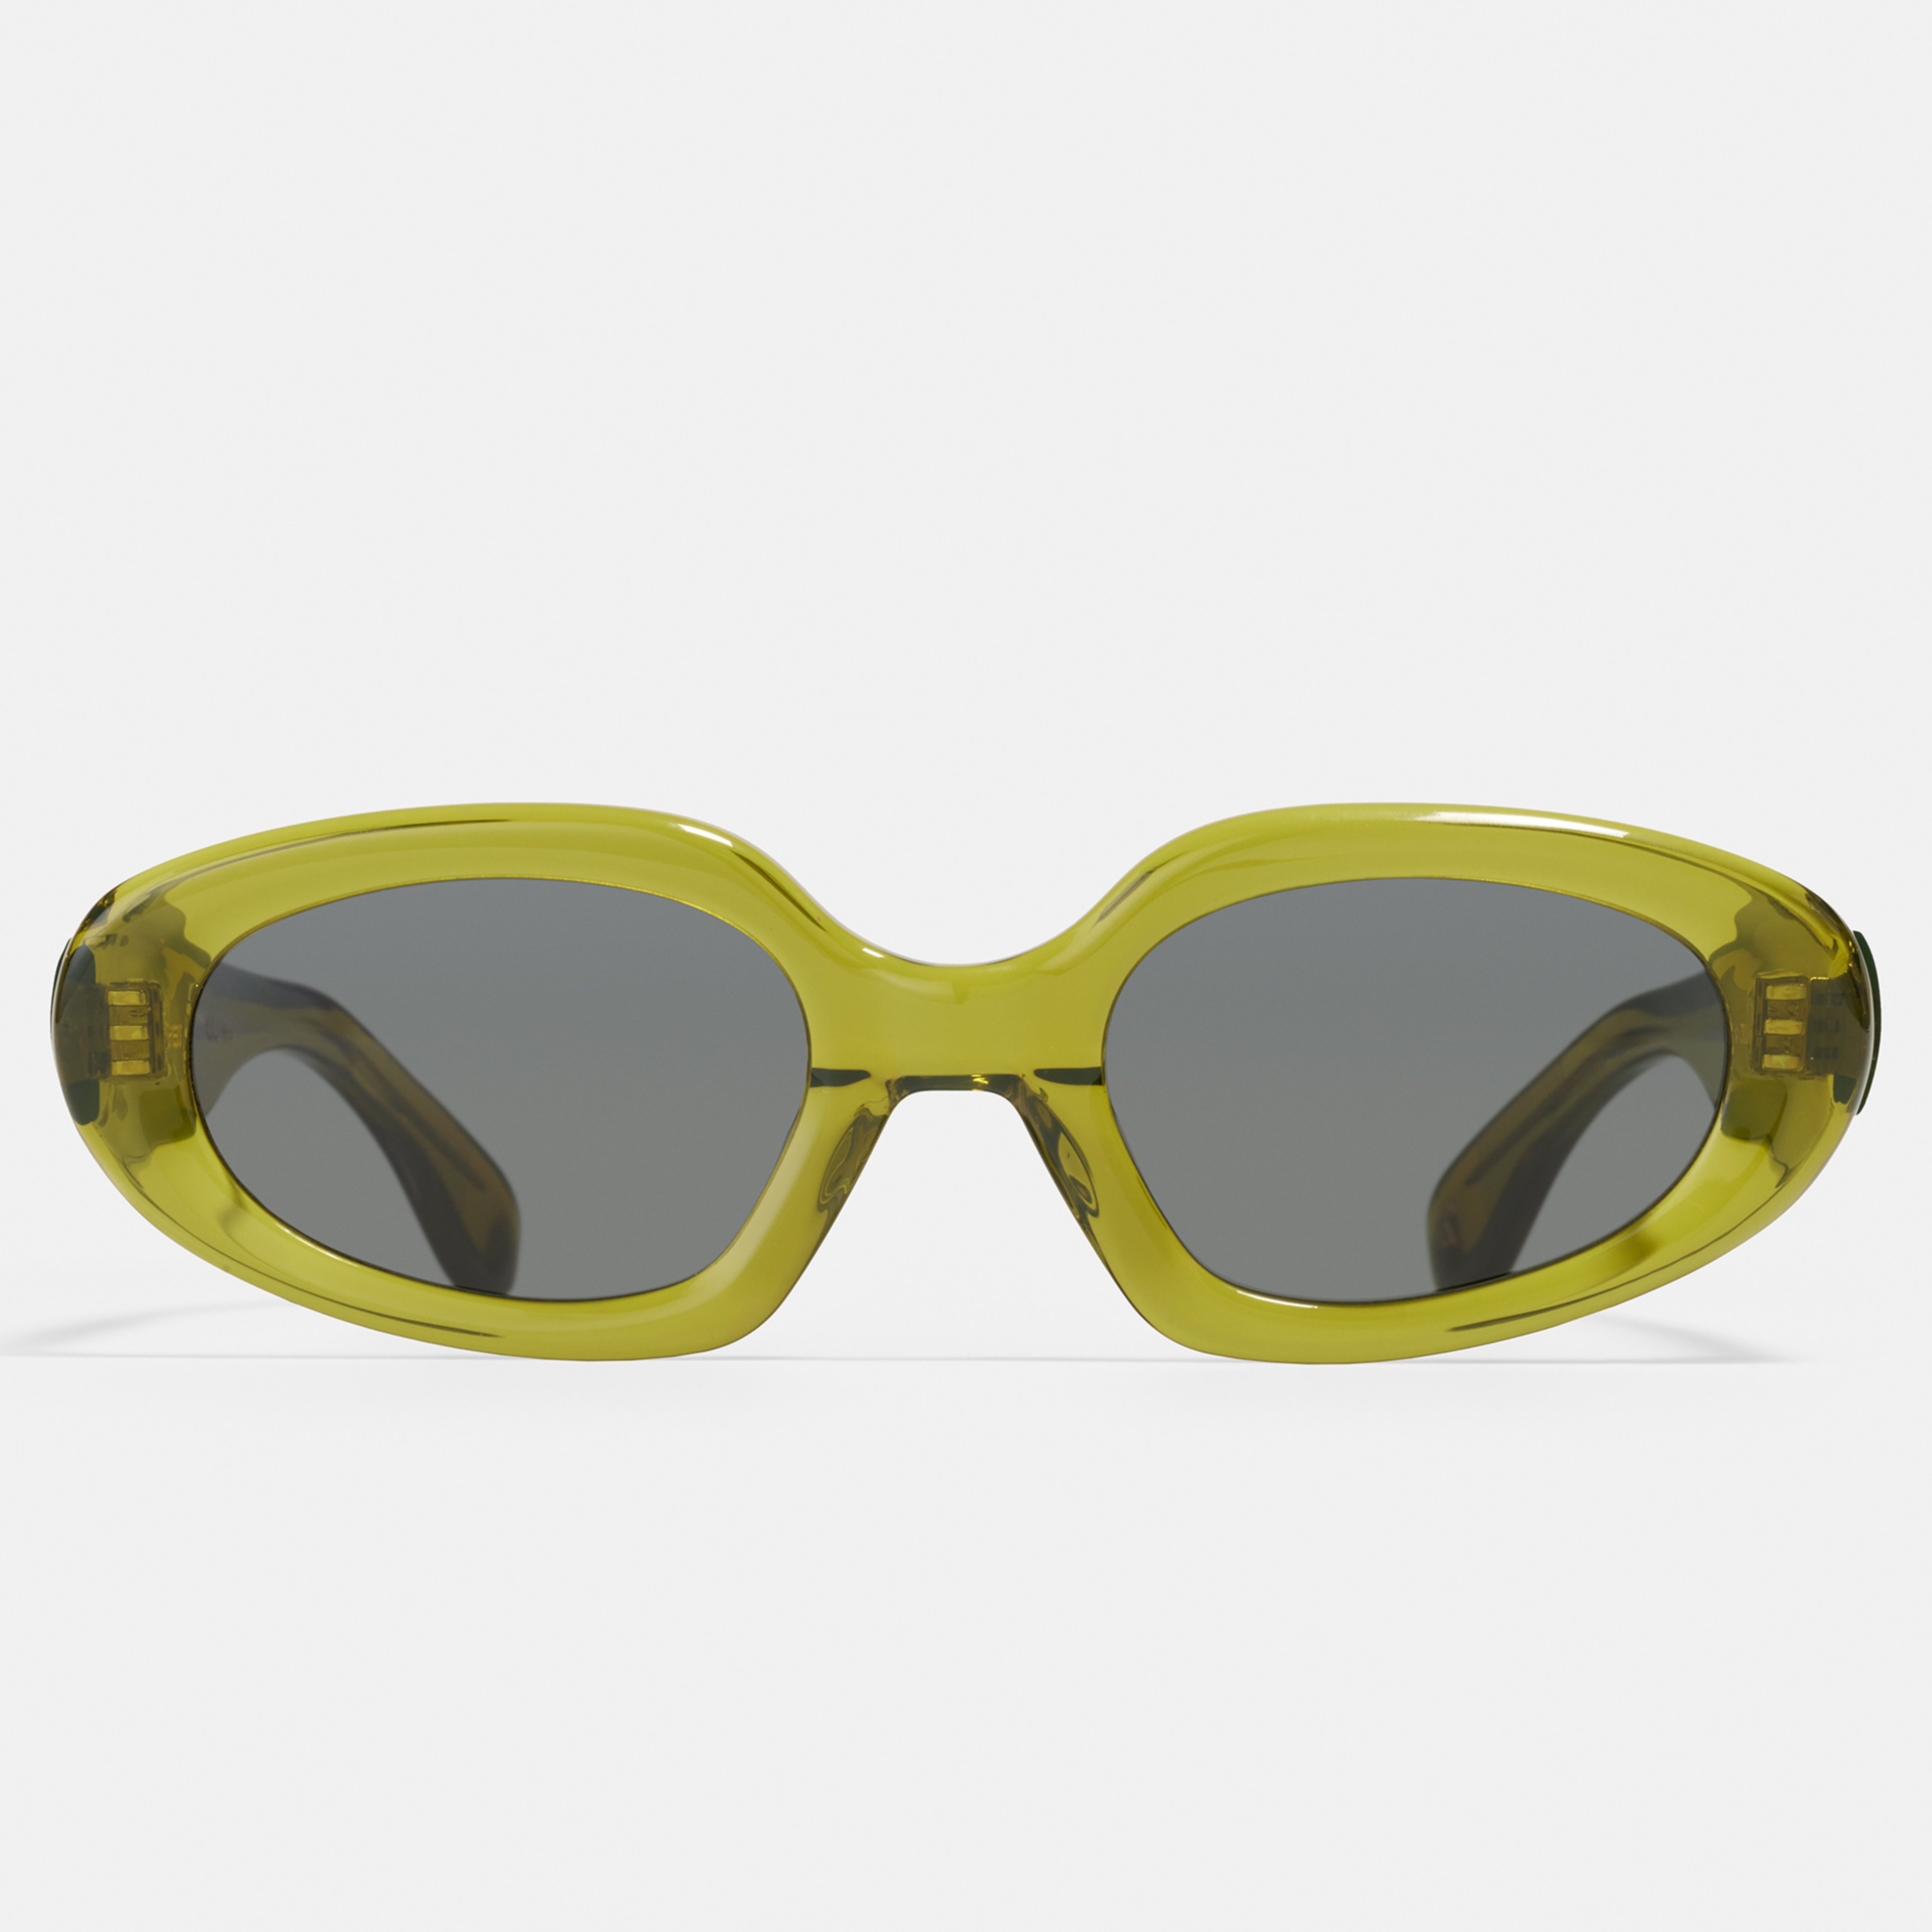 Ace & Tate Gafas de sol | oval Renew acetato bío in Verde